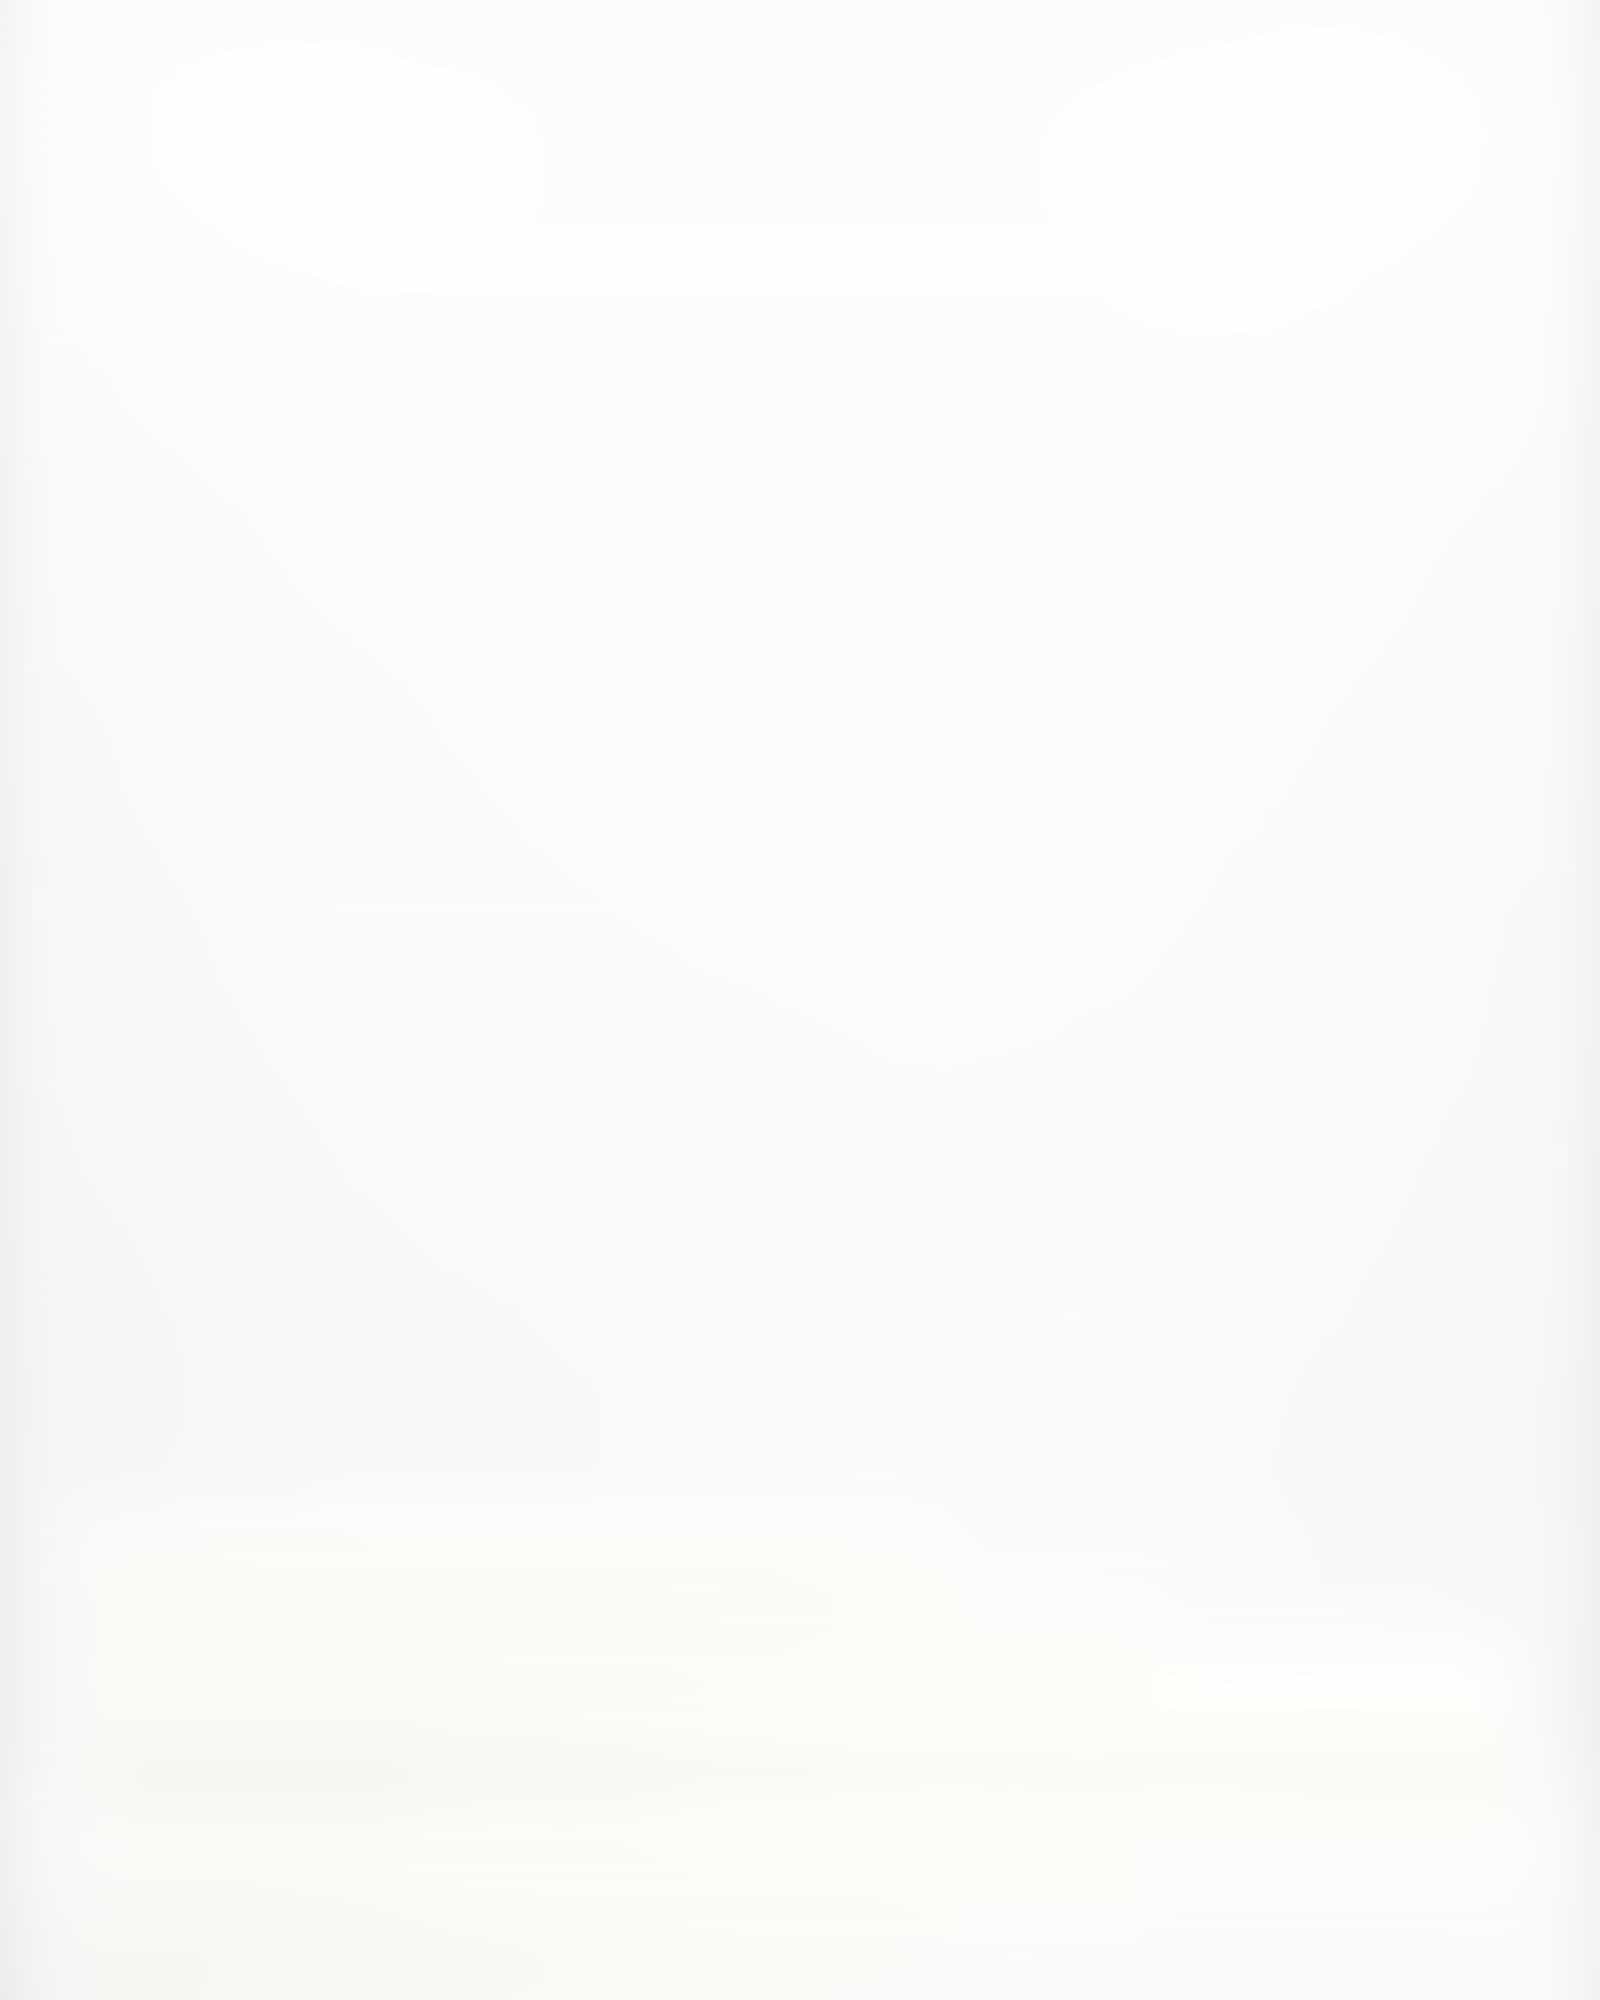 Möve - Waffelpiquée - Farbe: snow - 001 (1-0605/8762) - Duschtuch 70x140 cm